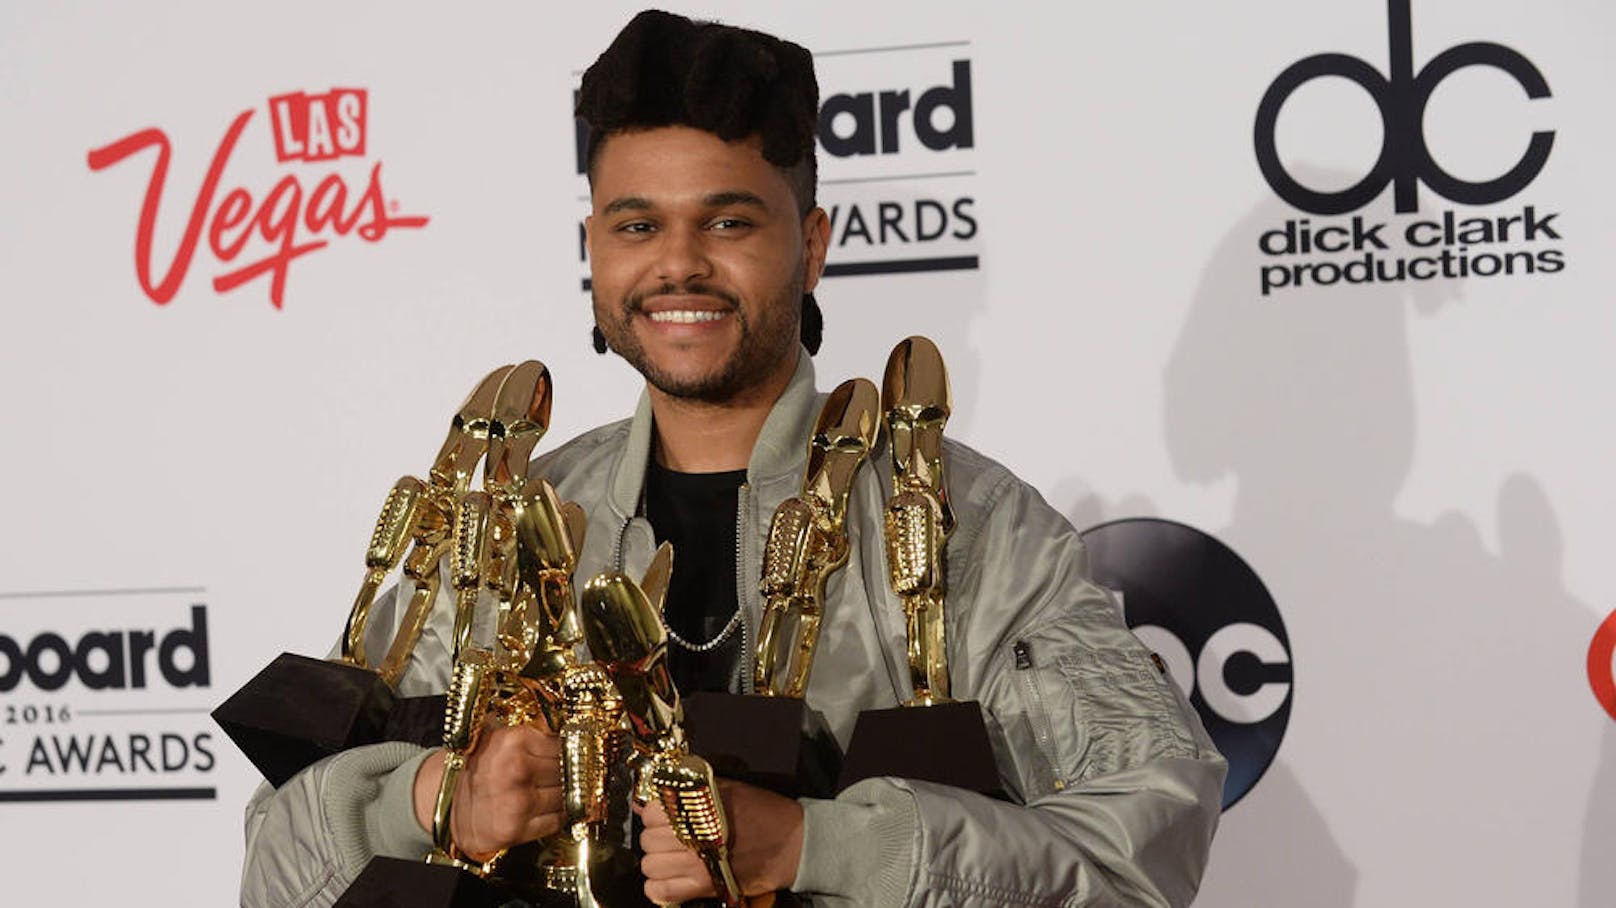 Der preisgekrönte Sänger <strong>The Weeknd</strong> schockiert die Musikwelt mit einem bizarren Selfie auf Social Media.<br>